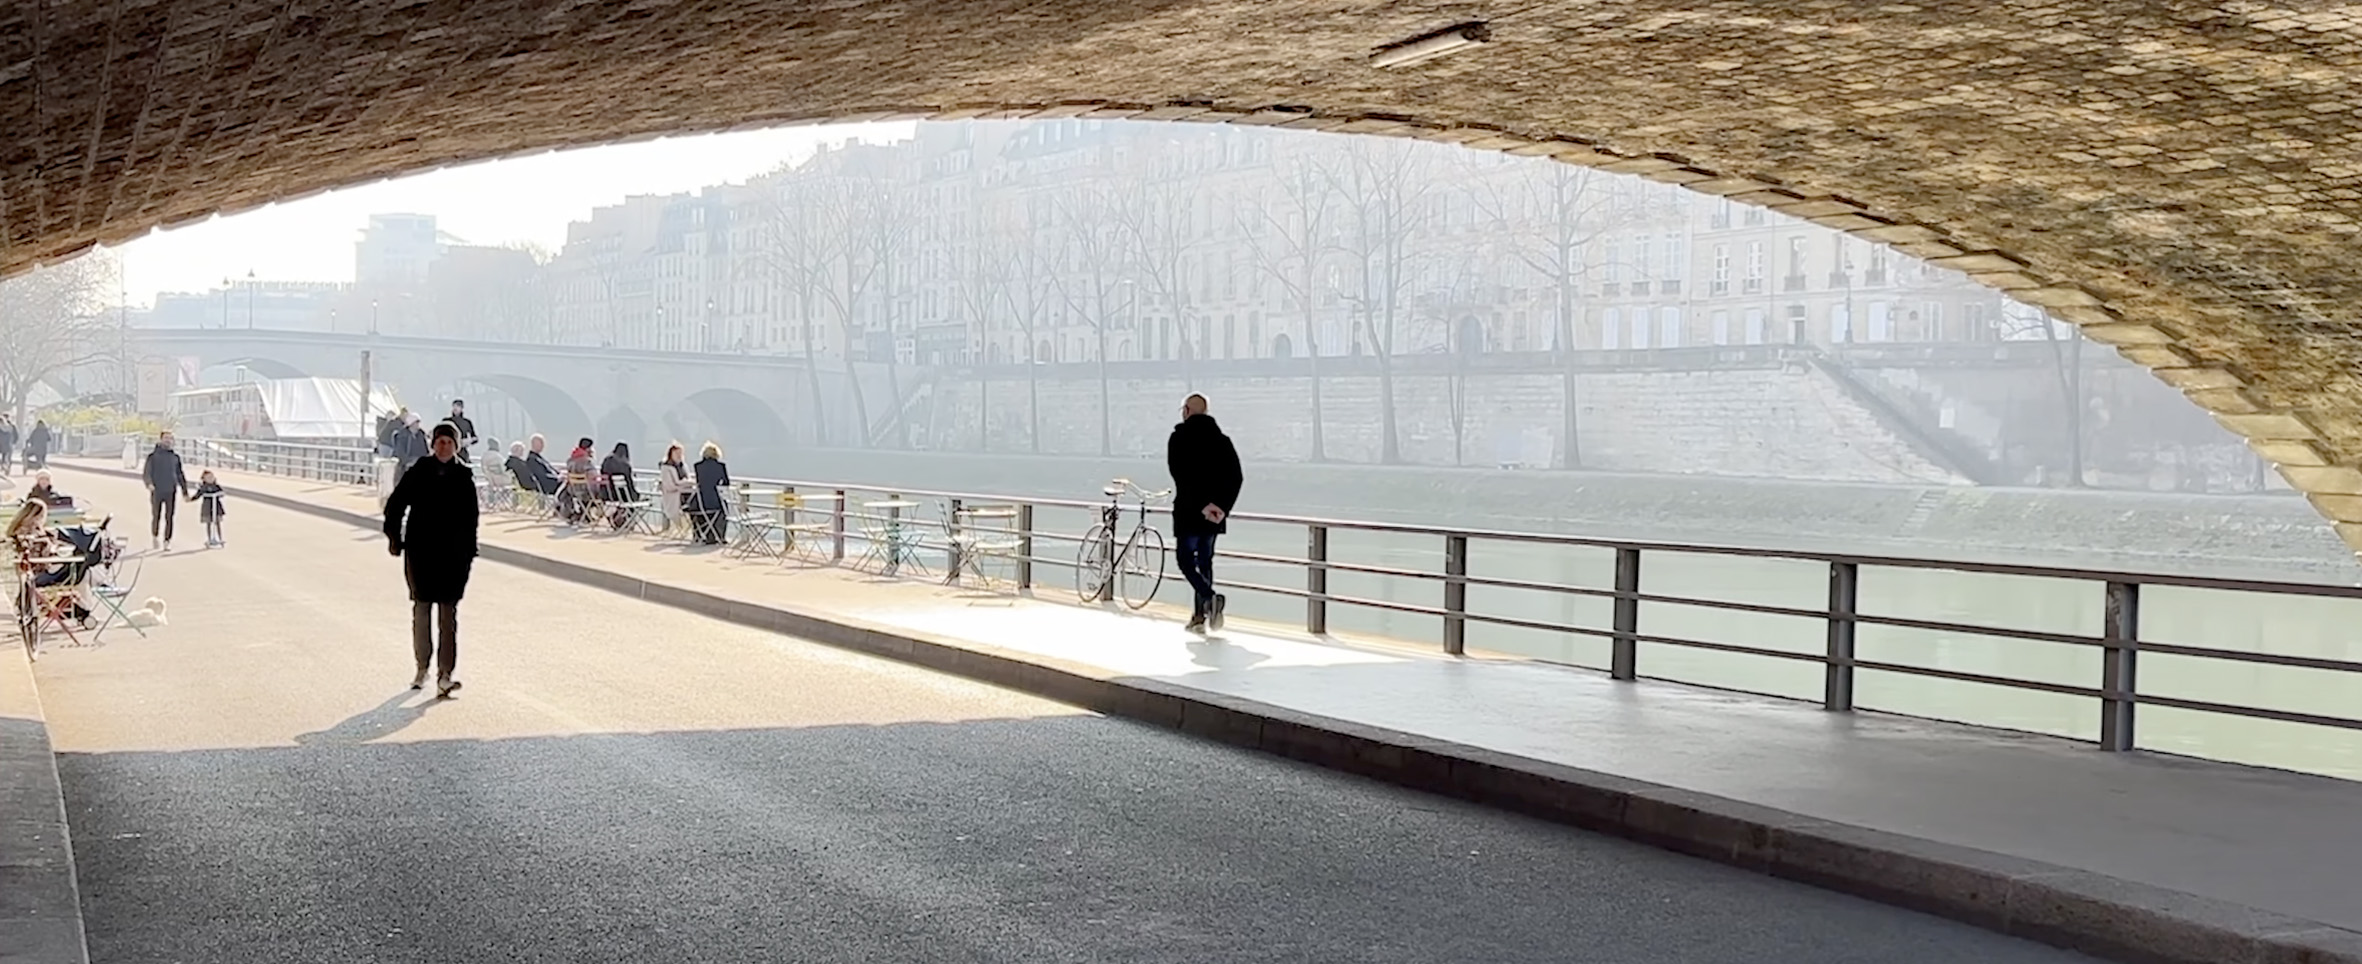 Vista de un puente de París en Noviembre y del río Sena